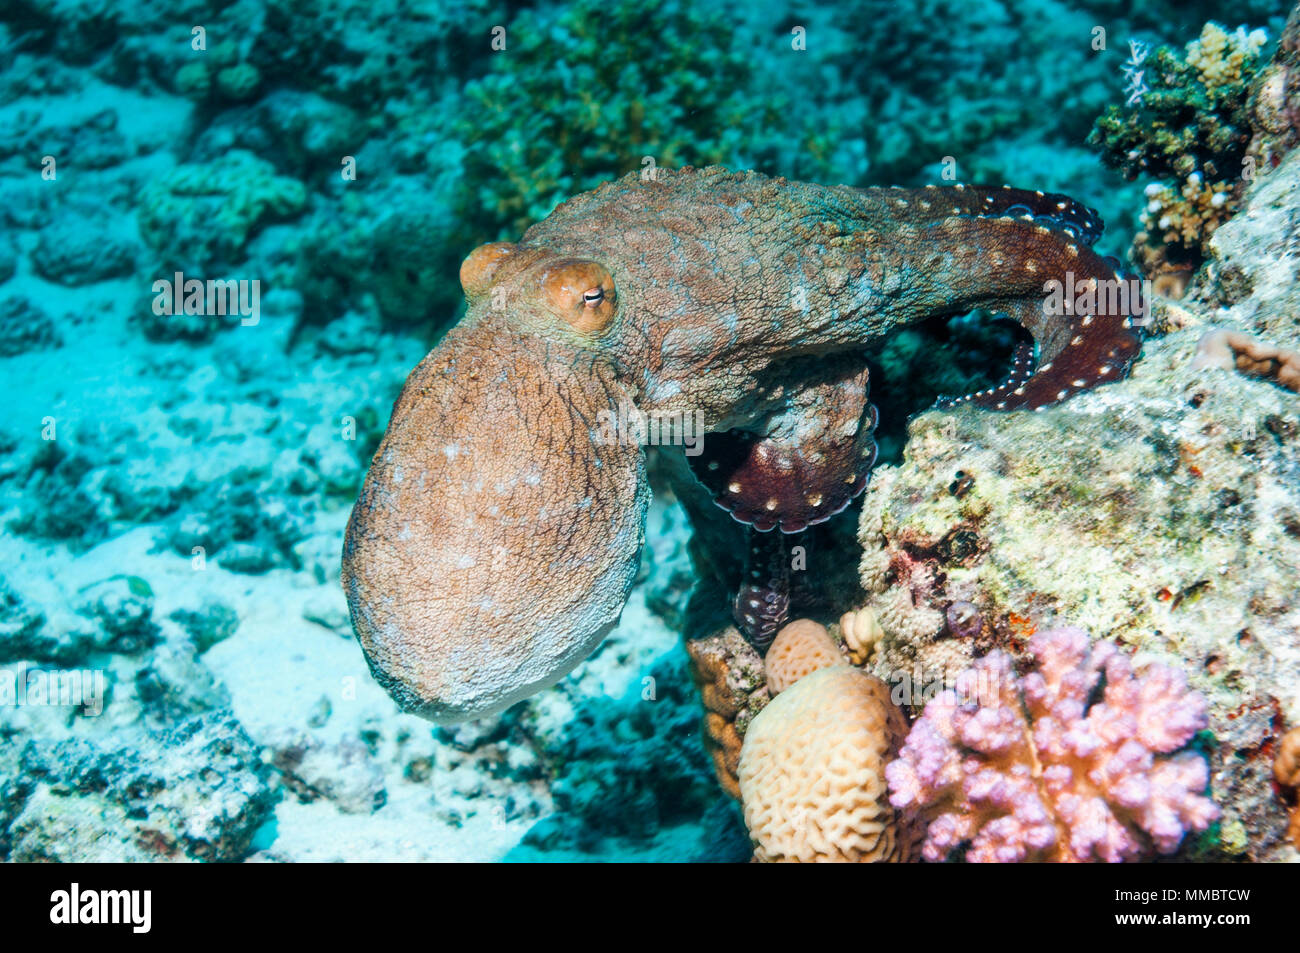 Octopus Octopus cyanea [jour] la chasse sur la barrière de corail. L'Egypte, Mer Rouge. Banque D'Images